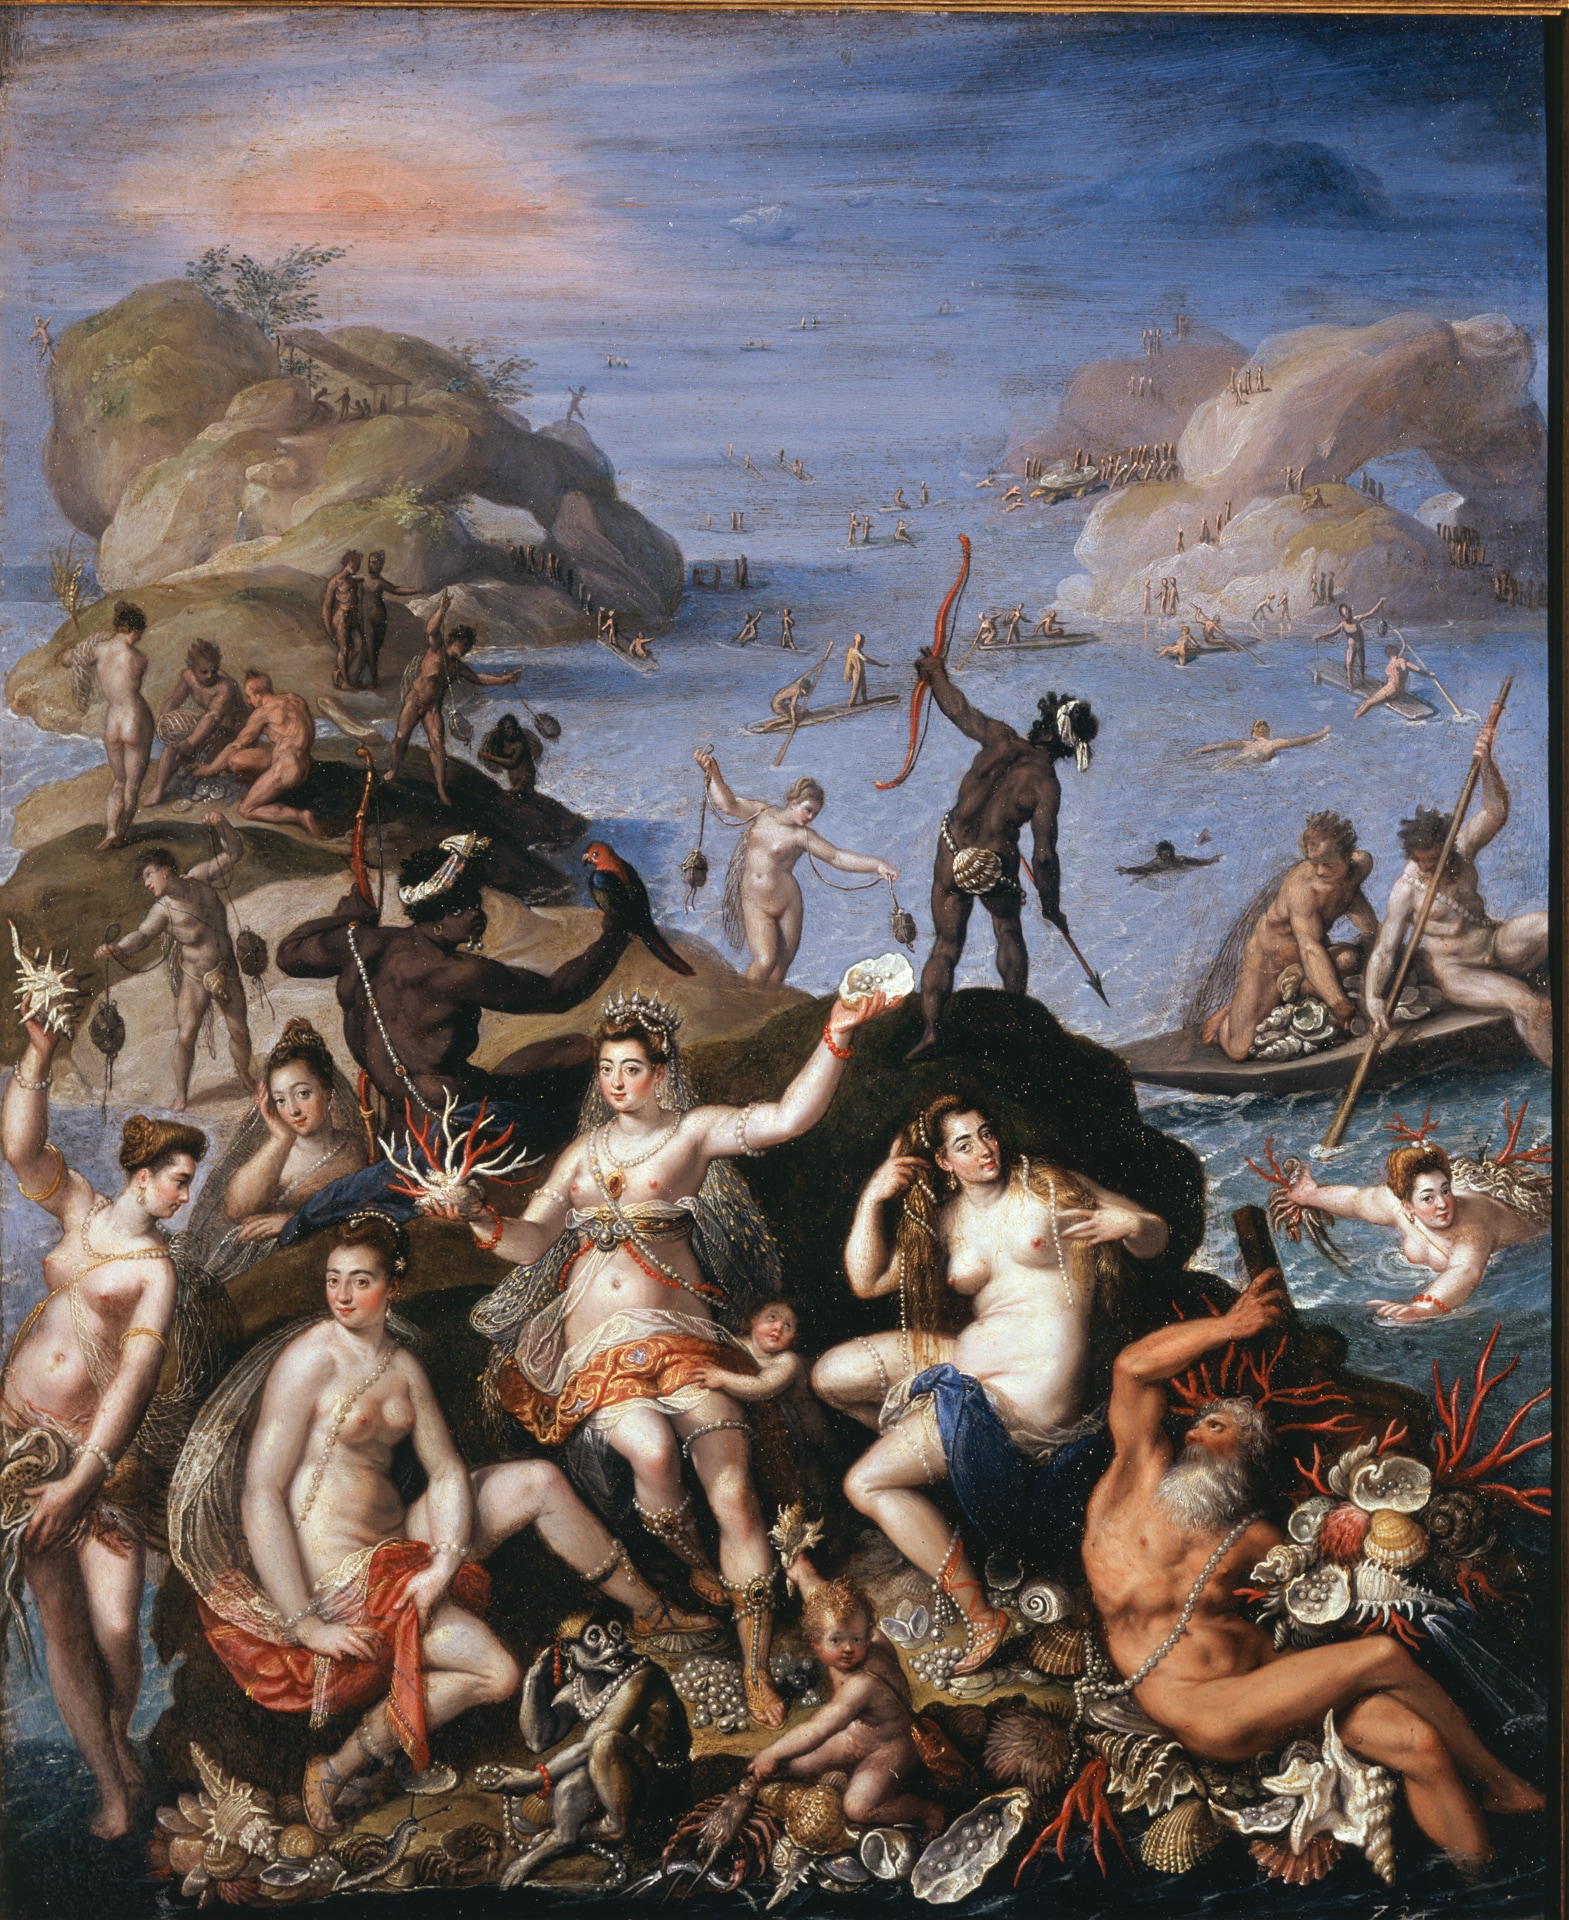 Jacopo Zucchi, La pesca del corallo o Il regno di Anfitrite, 1585 circa, olio su rame, 52 x 42,5 cm, Roma, Galleria Borghese.